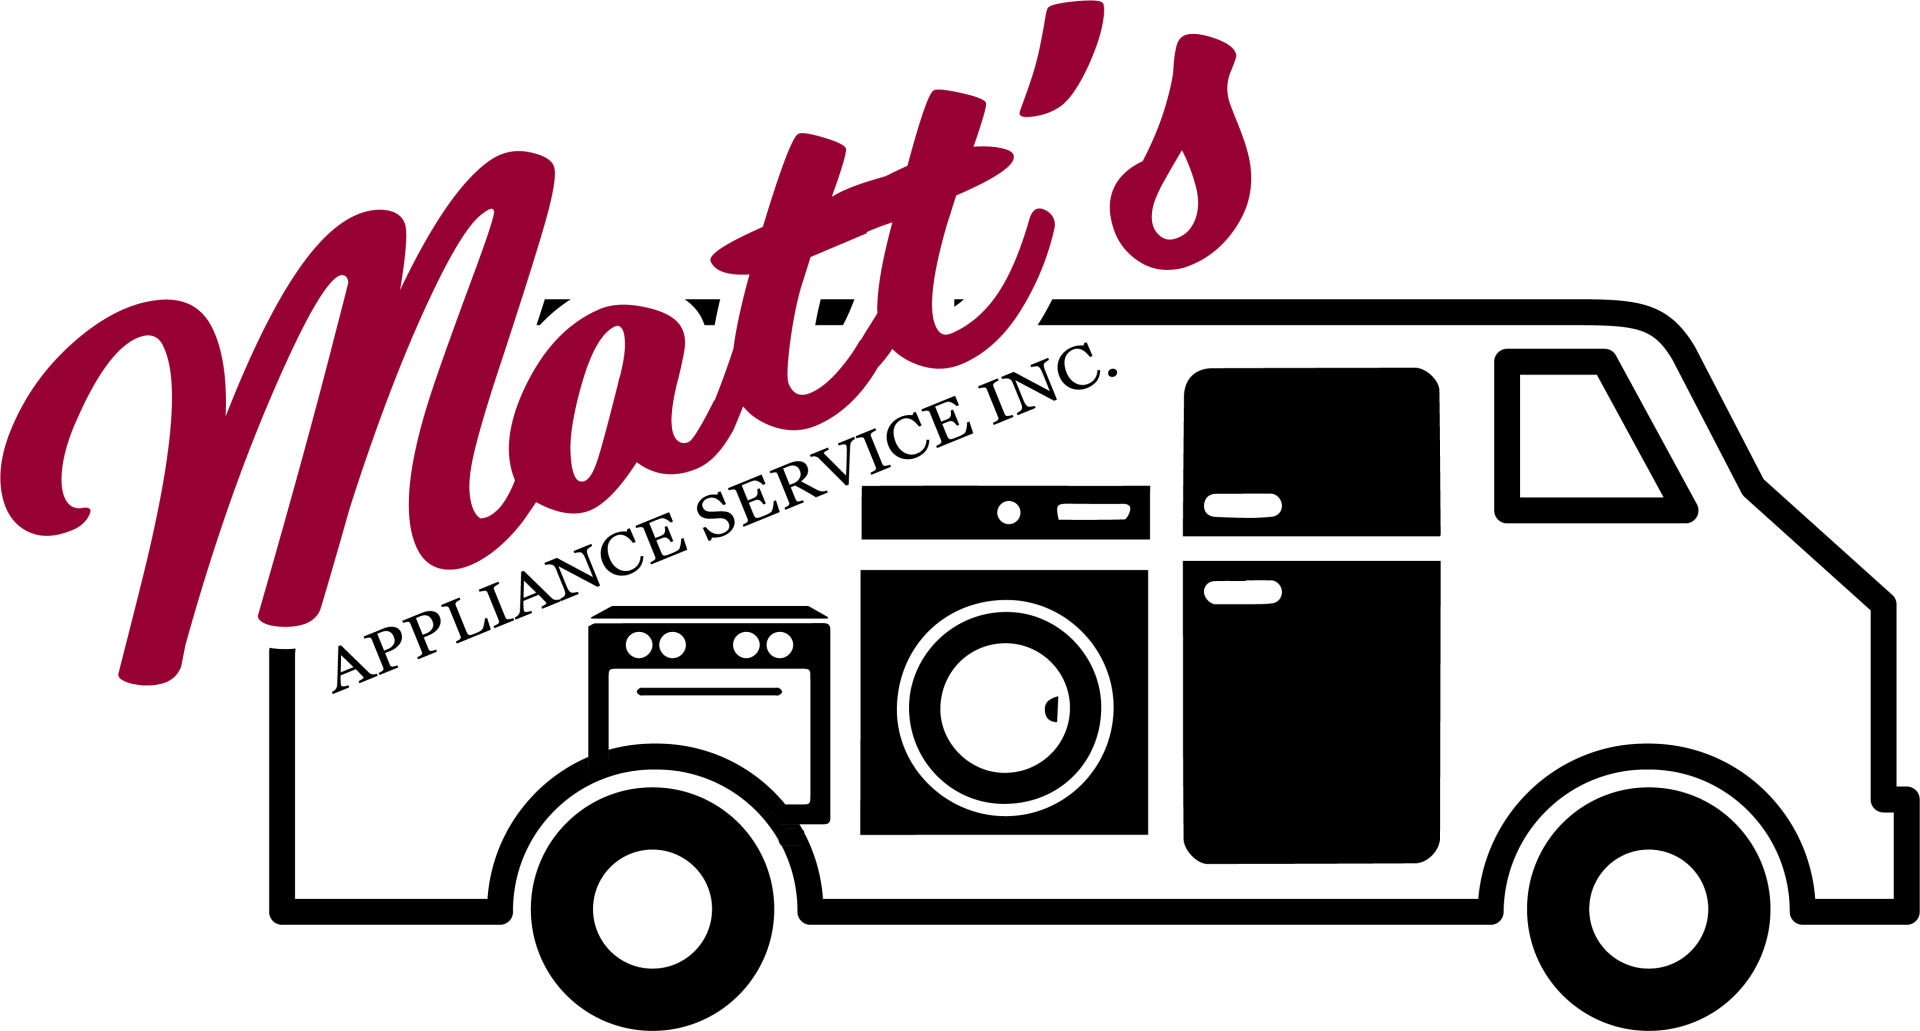 MATT'S APPLIANCE SERVICE INC